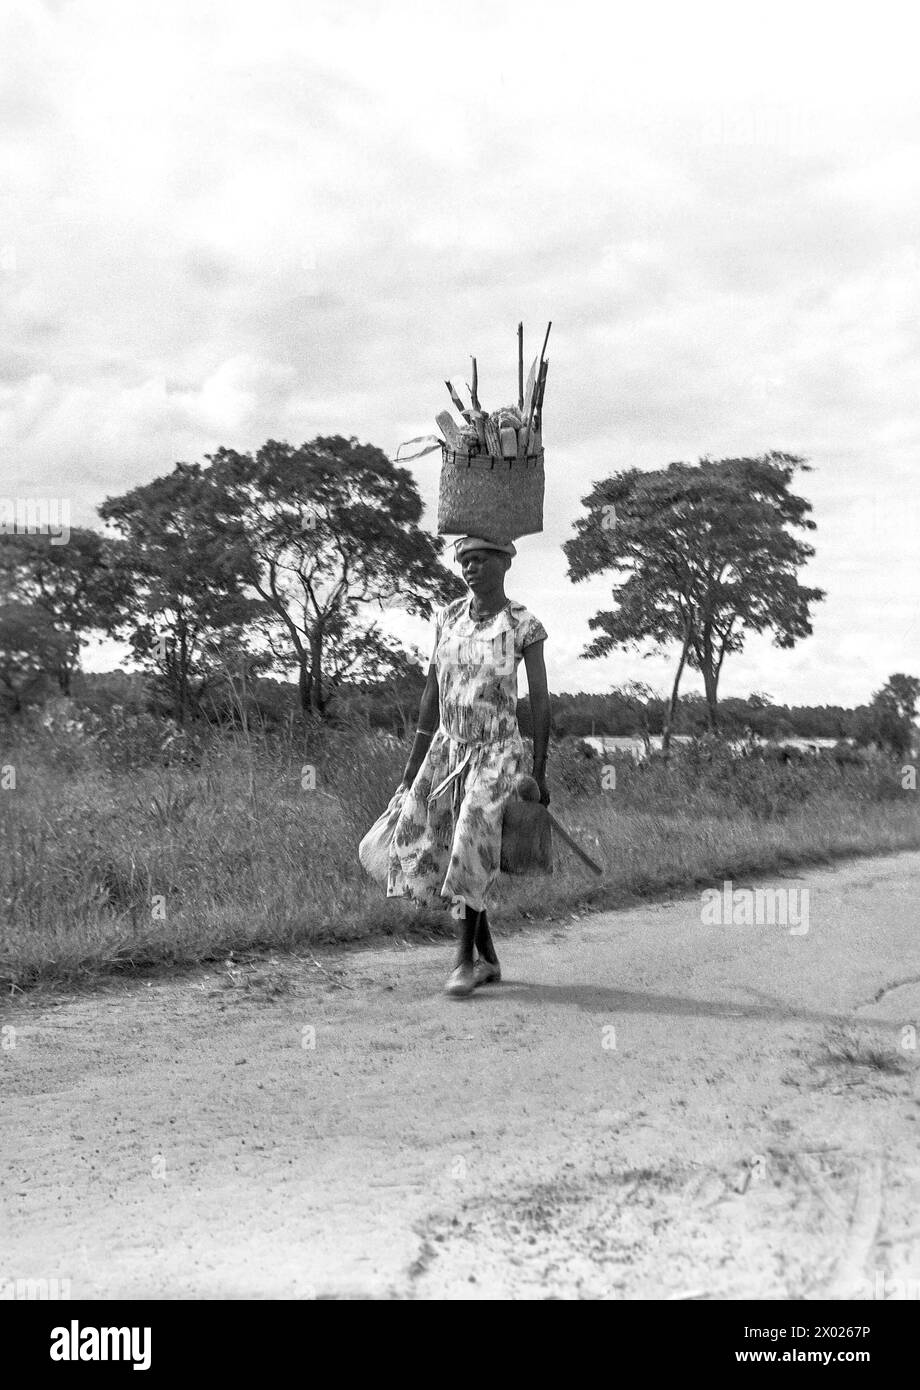 Eine junge Frau, die mit einem großen Einkaufskorb auf dem Kopf läuft. Nordrhodesien/Sambia um 1955 Stockfoto